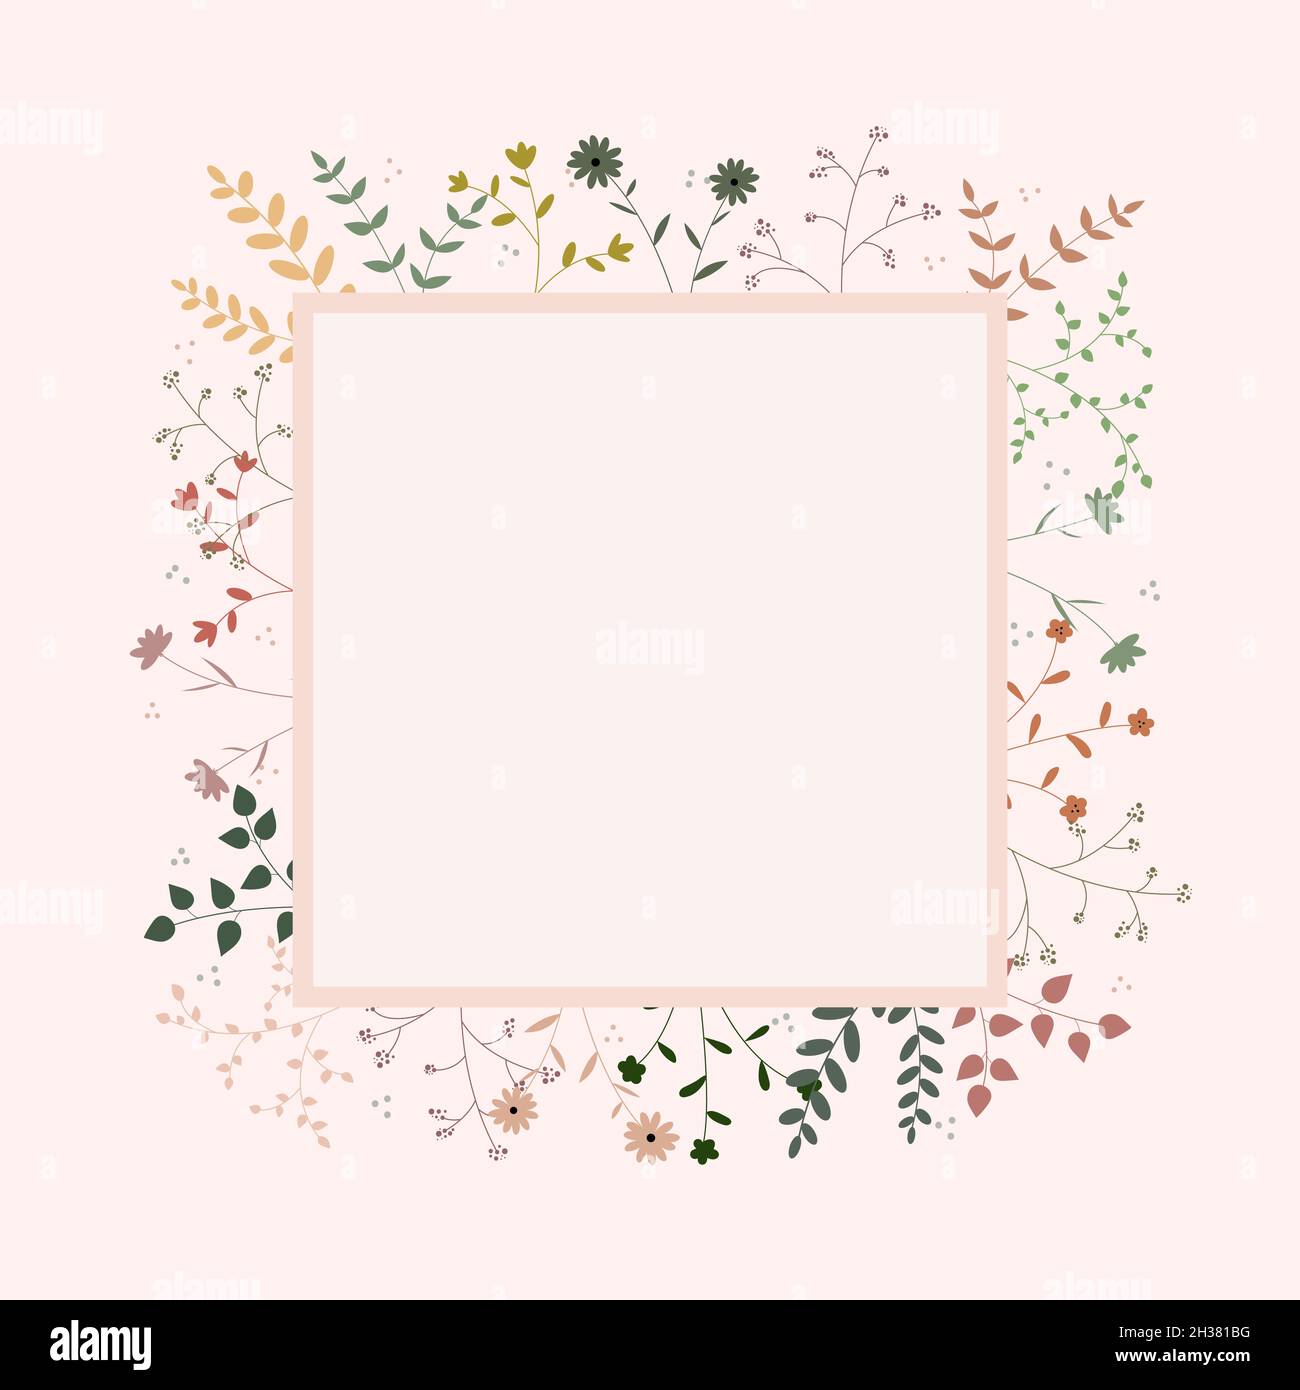 Vecteur minimaliste avec des plantes et des fleurs tout autour d'un carré Illustration de Vecteur